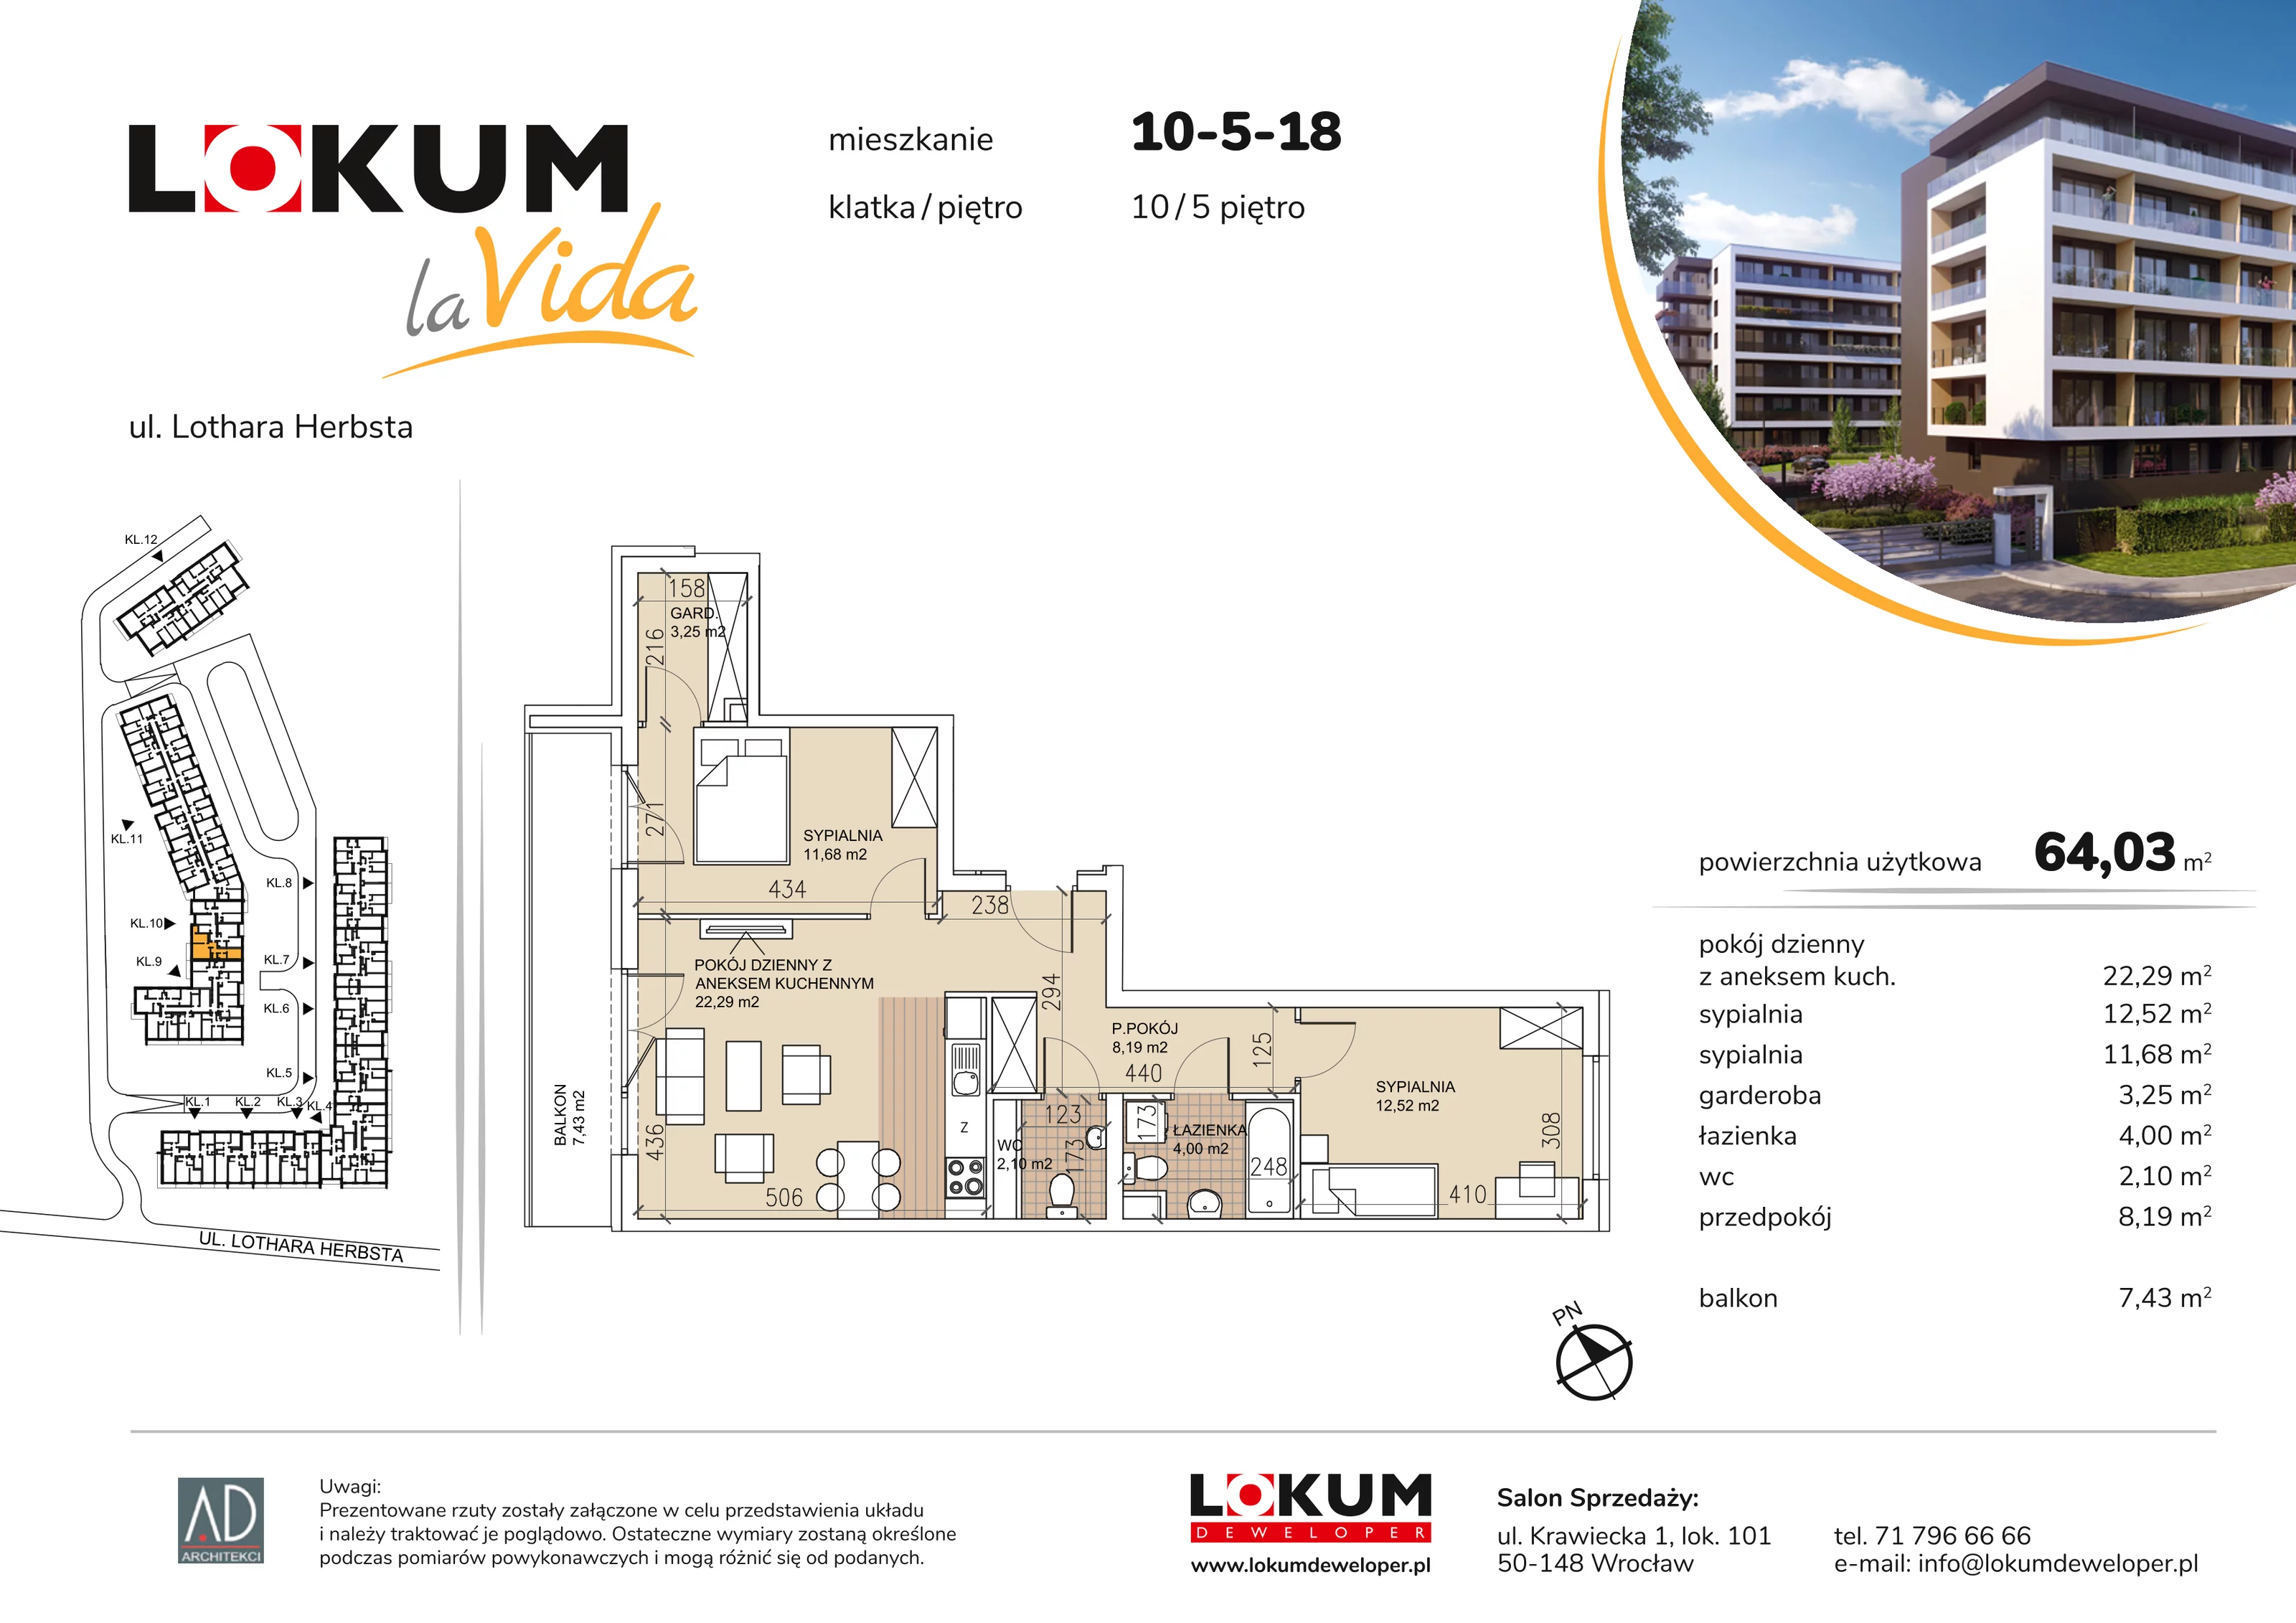 Mieszkanie 64,03 m², piętro 5, oferta nr 10-5-18, Lokum la Vida, Wrocław, Sołtysowice, ul. Lothara Herbsta